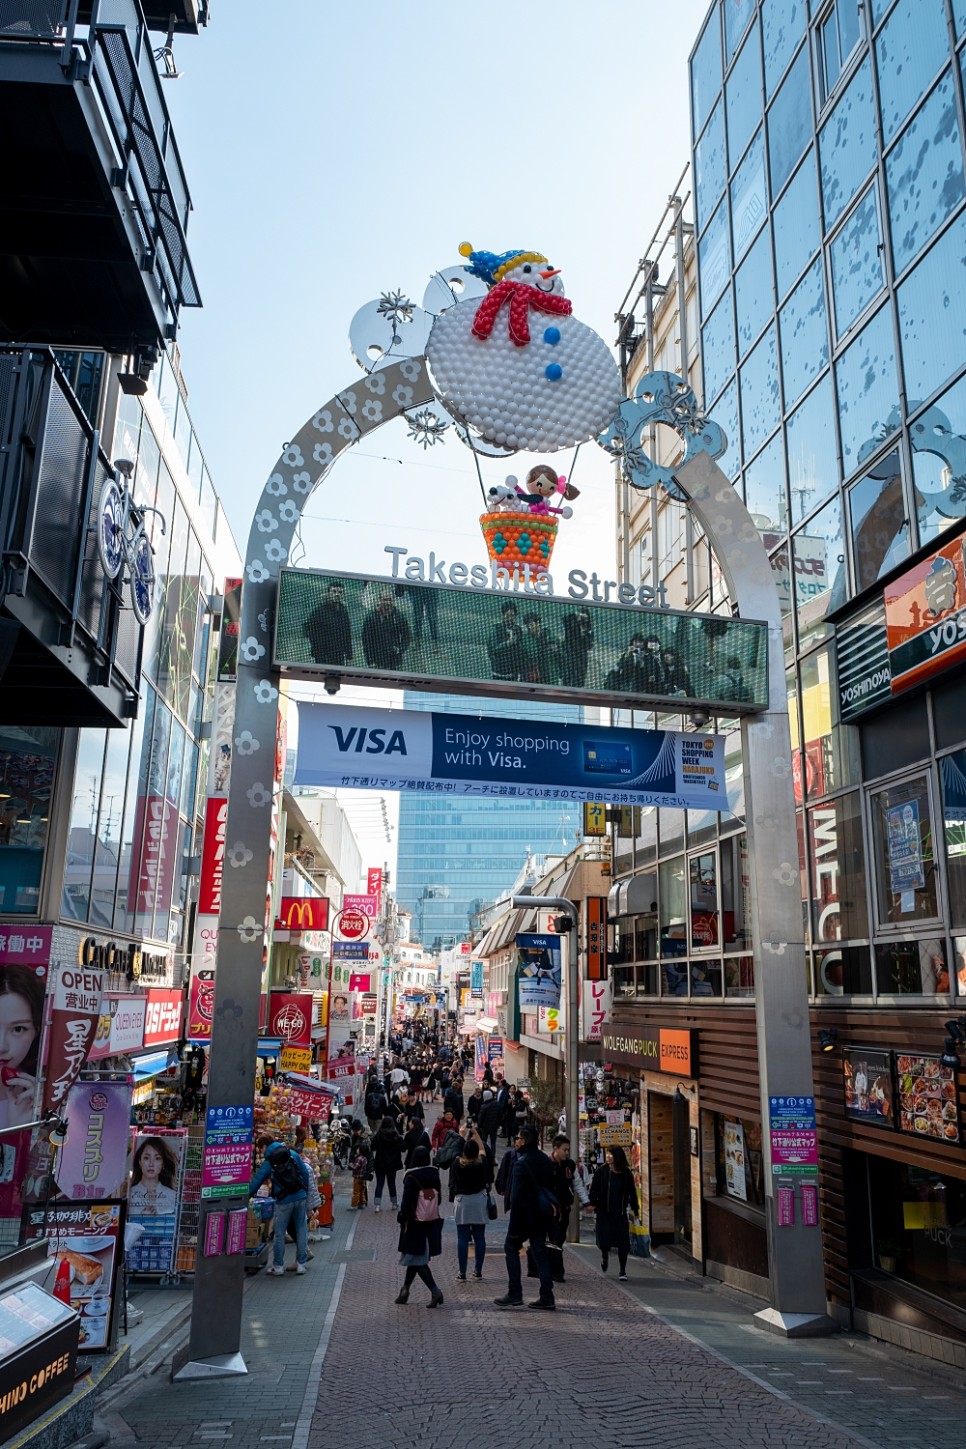 도쿄 오사카 여행필수품 포켓와이파이 무제한 데이터 10% 할인 방법